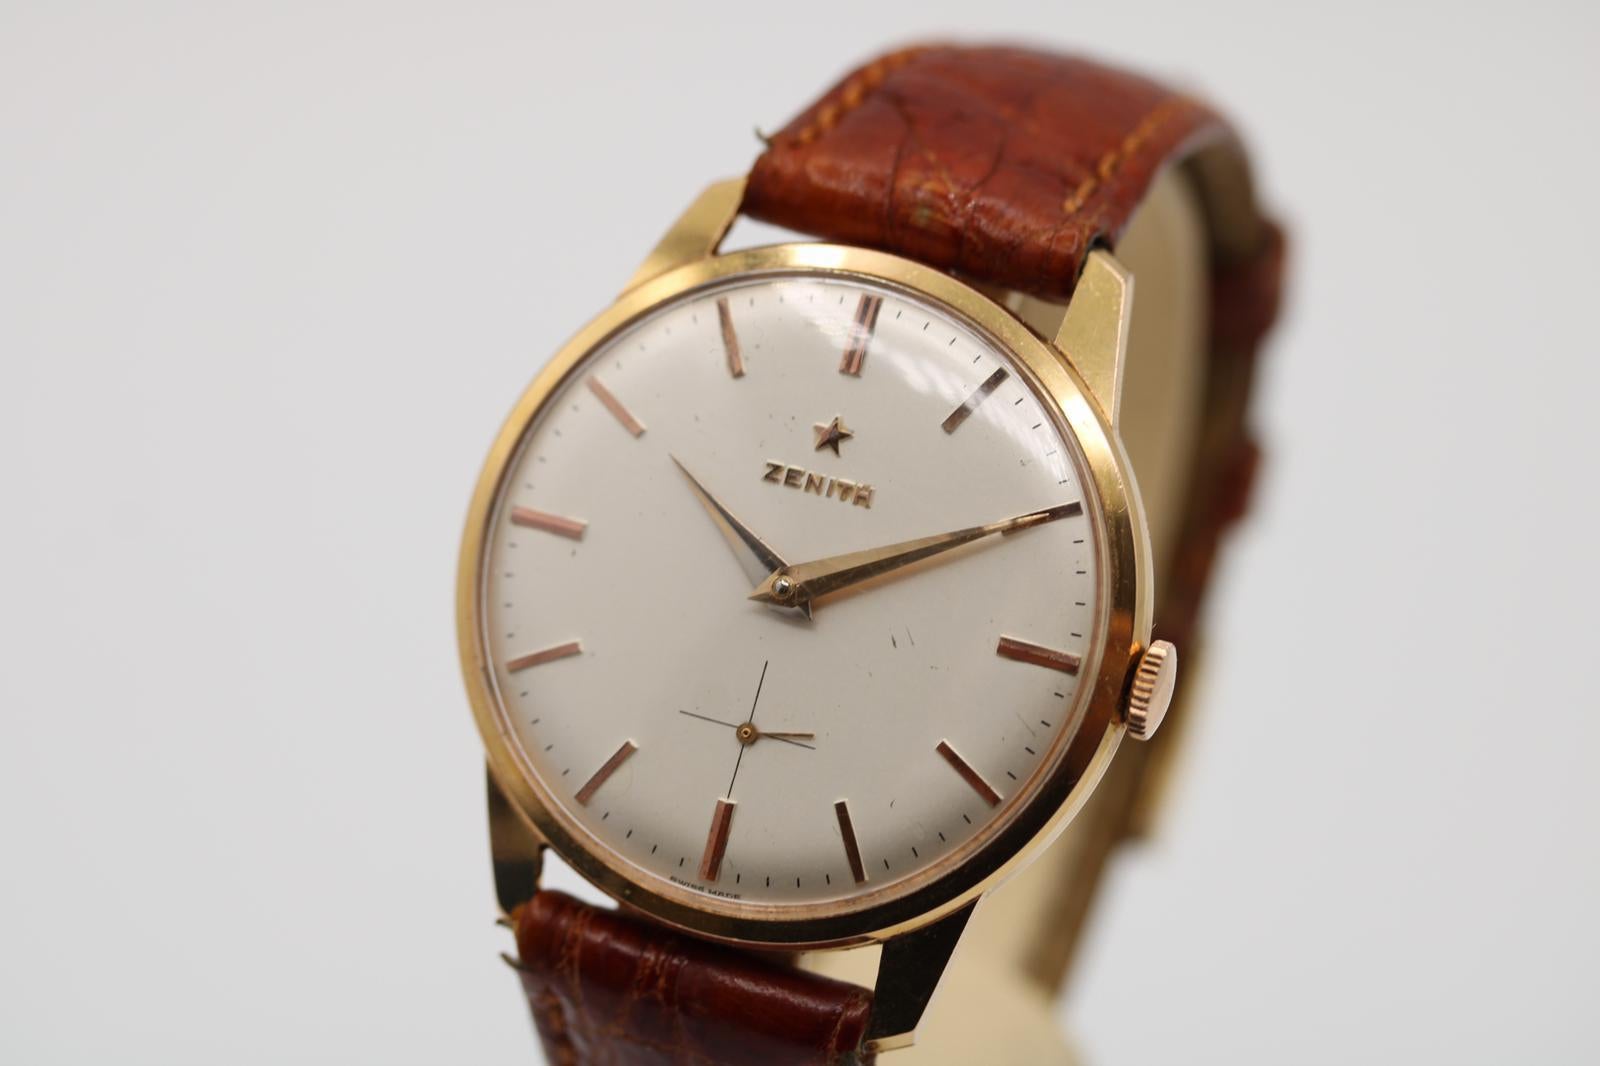 Ein wirklich beeindruckendes Beispiel für das Design einer Uhr aus der Mitte der 60er Jahre ist diese klassische Zenith-Handaufzugsuhr. 

35-mm-Gehäuse aus Roségold, versilbertes Zifferblatt und Zeiger mit untergeordnetem Sekundenzifferblatt in der